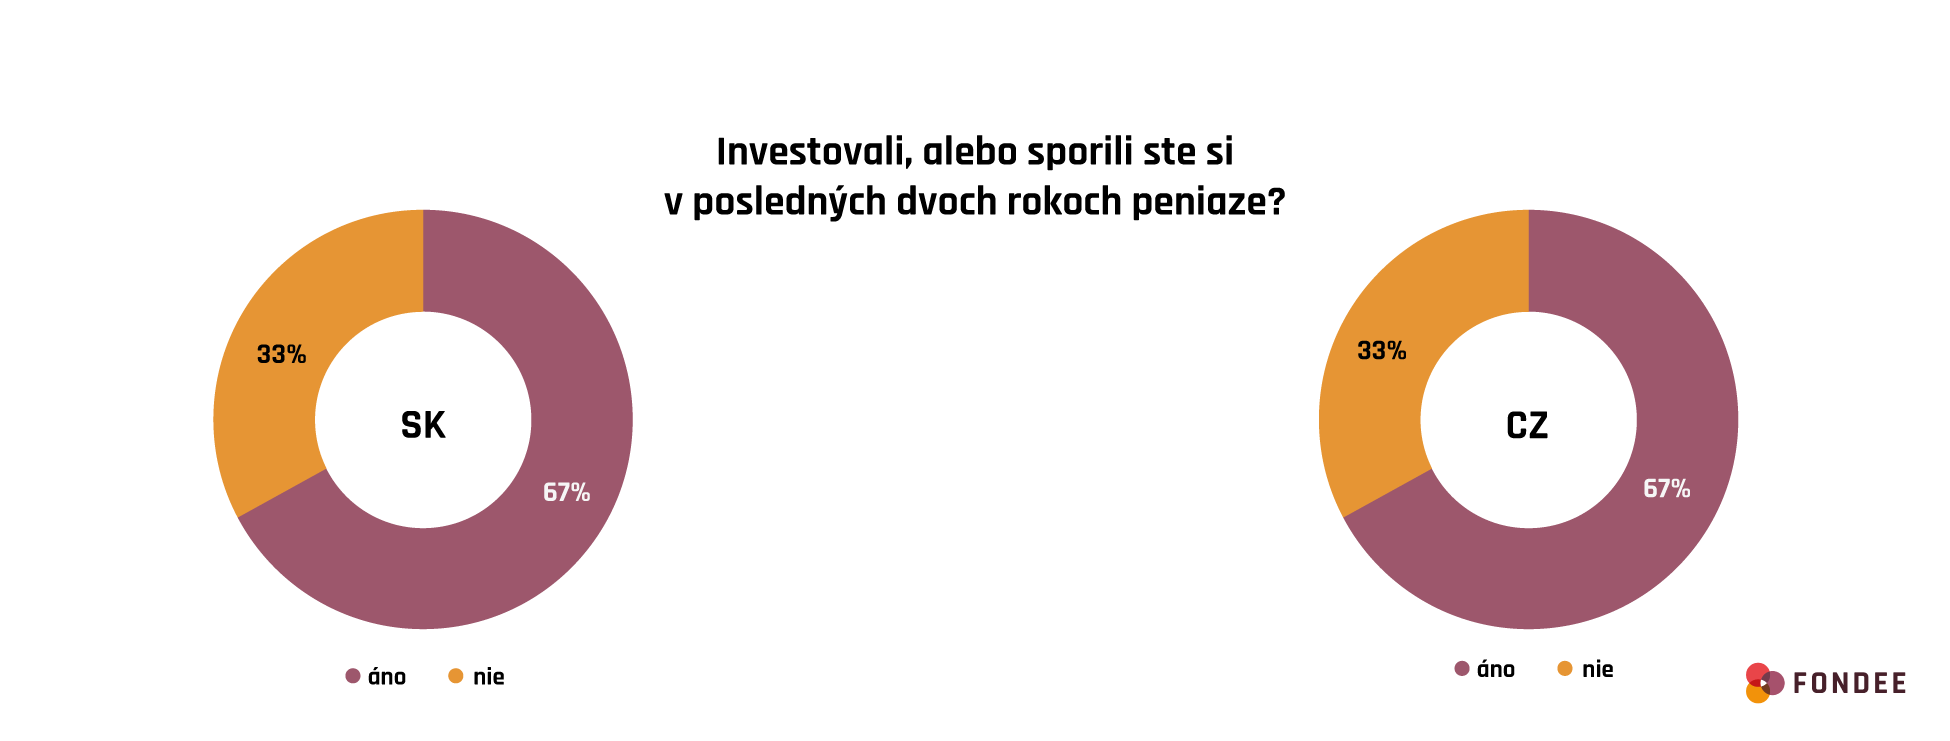 Ako investujú Slováci v porovnaní s Čechmi